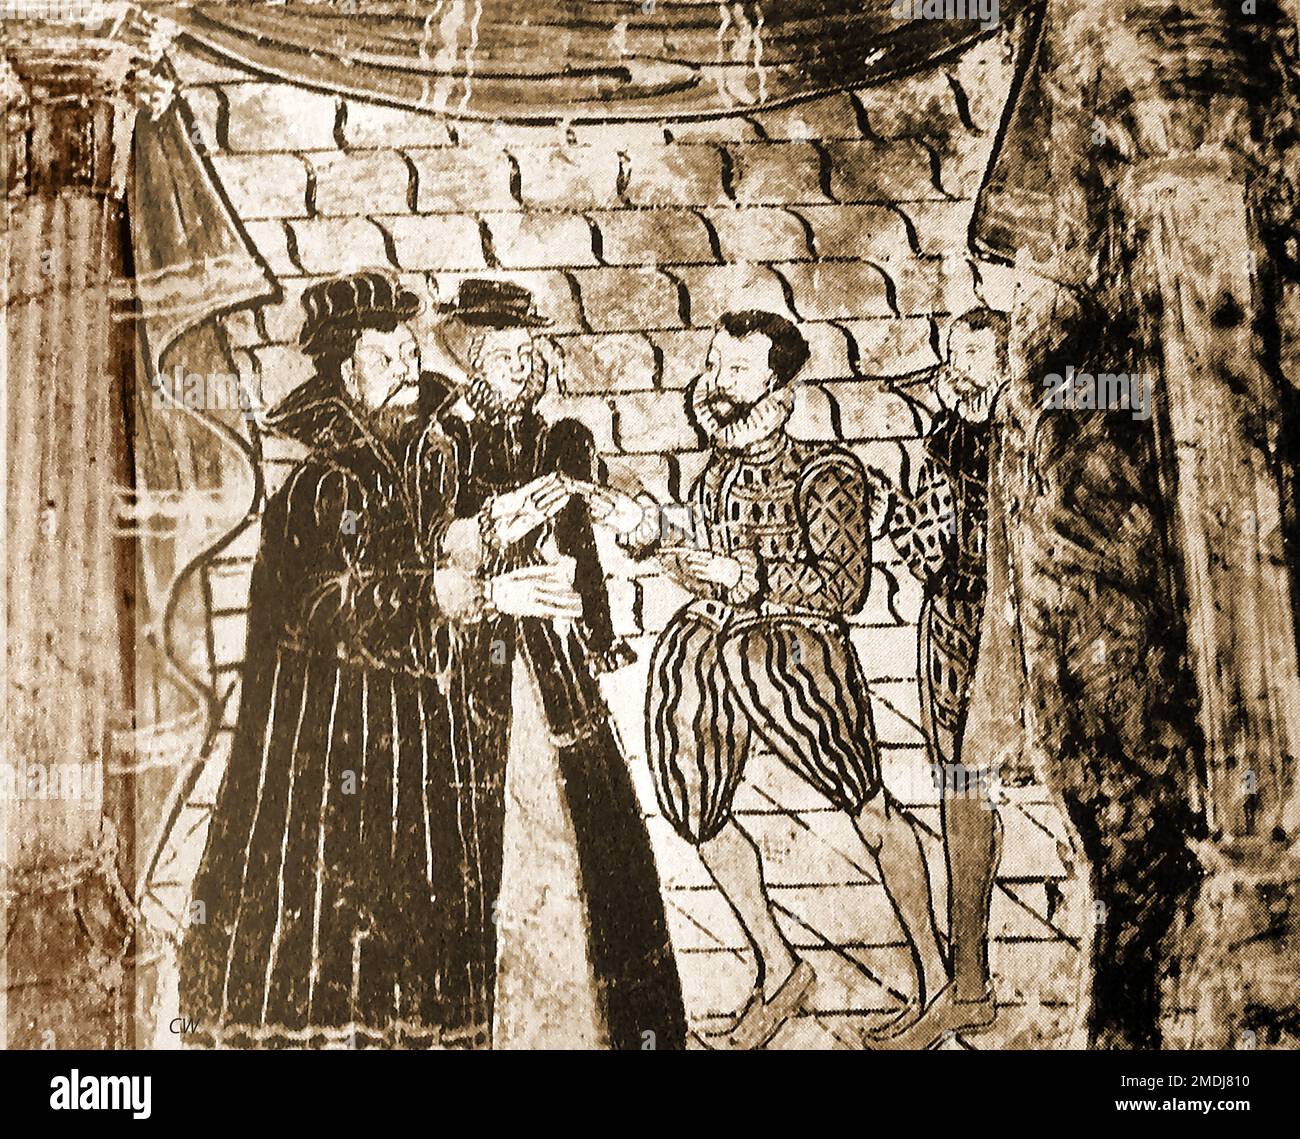 Britische Pubs Inns und Tavernen - ein altes Wandgemälde, das die Geschichte von Tobit erzählt, das hinter der Täfelung im Swan, Stratford on Avon, entdeckt wurde (Bild von 1940). Das Buch Tobit, auch bekannt als das Buch der Tobias oder das Buch der Tobi, ist ein jüdisches Werk aus dem 2. / 3. Jahrhundert v. Chr., das zeigt, wie Gott die Gläubigen testet Stockfoto